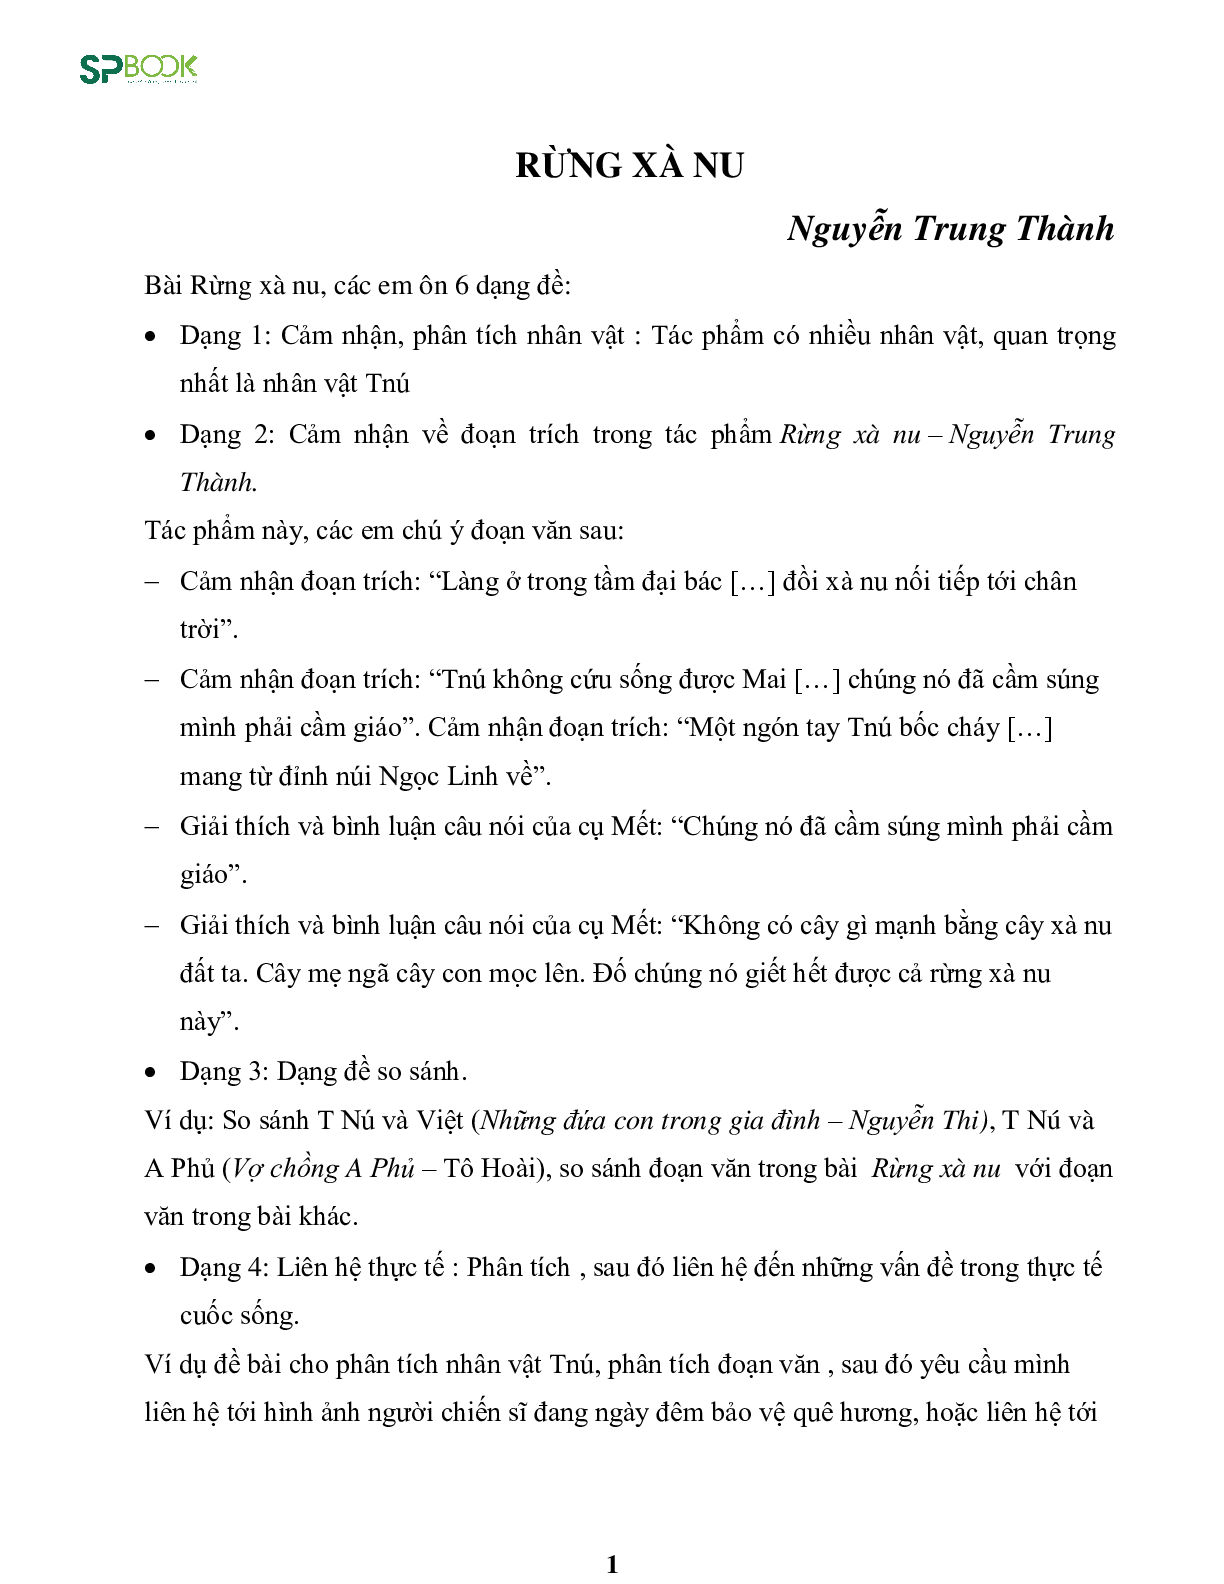 Kiến thức cơ bản và những dạng đề thi về bài Rừng xà nu - Nguyễn Trung Thành Ngữ văn 12 (trang 1)